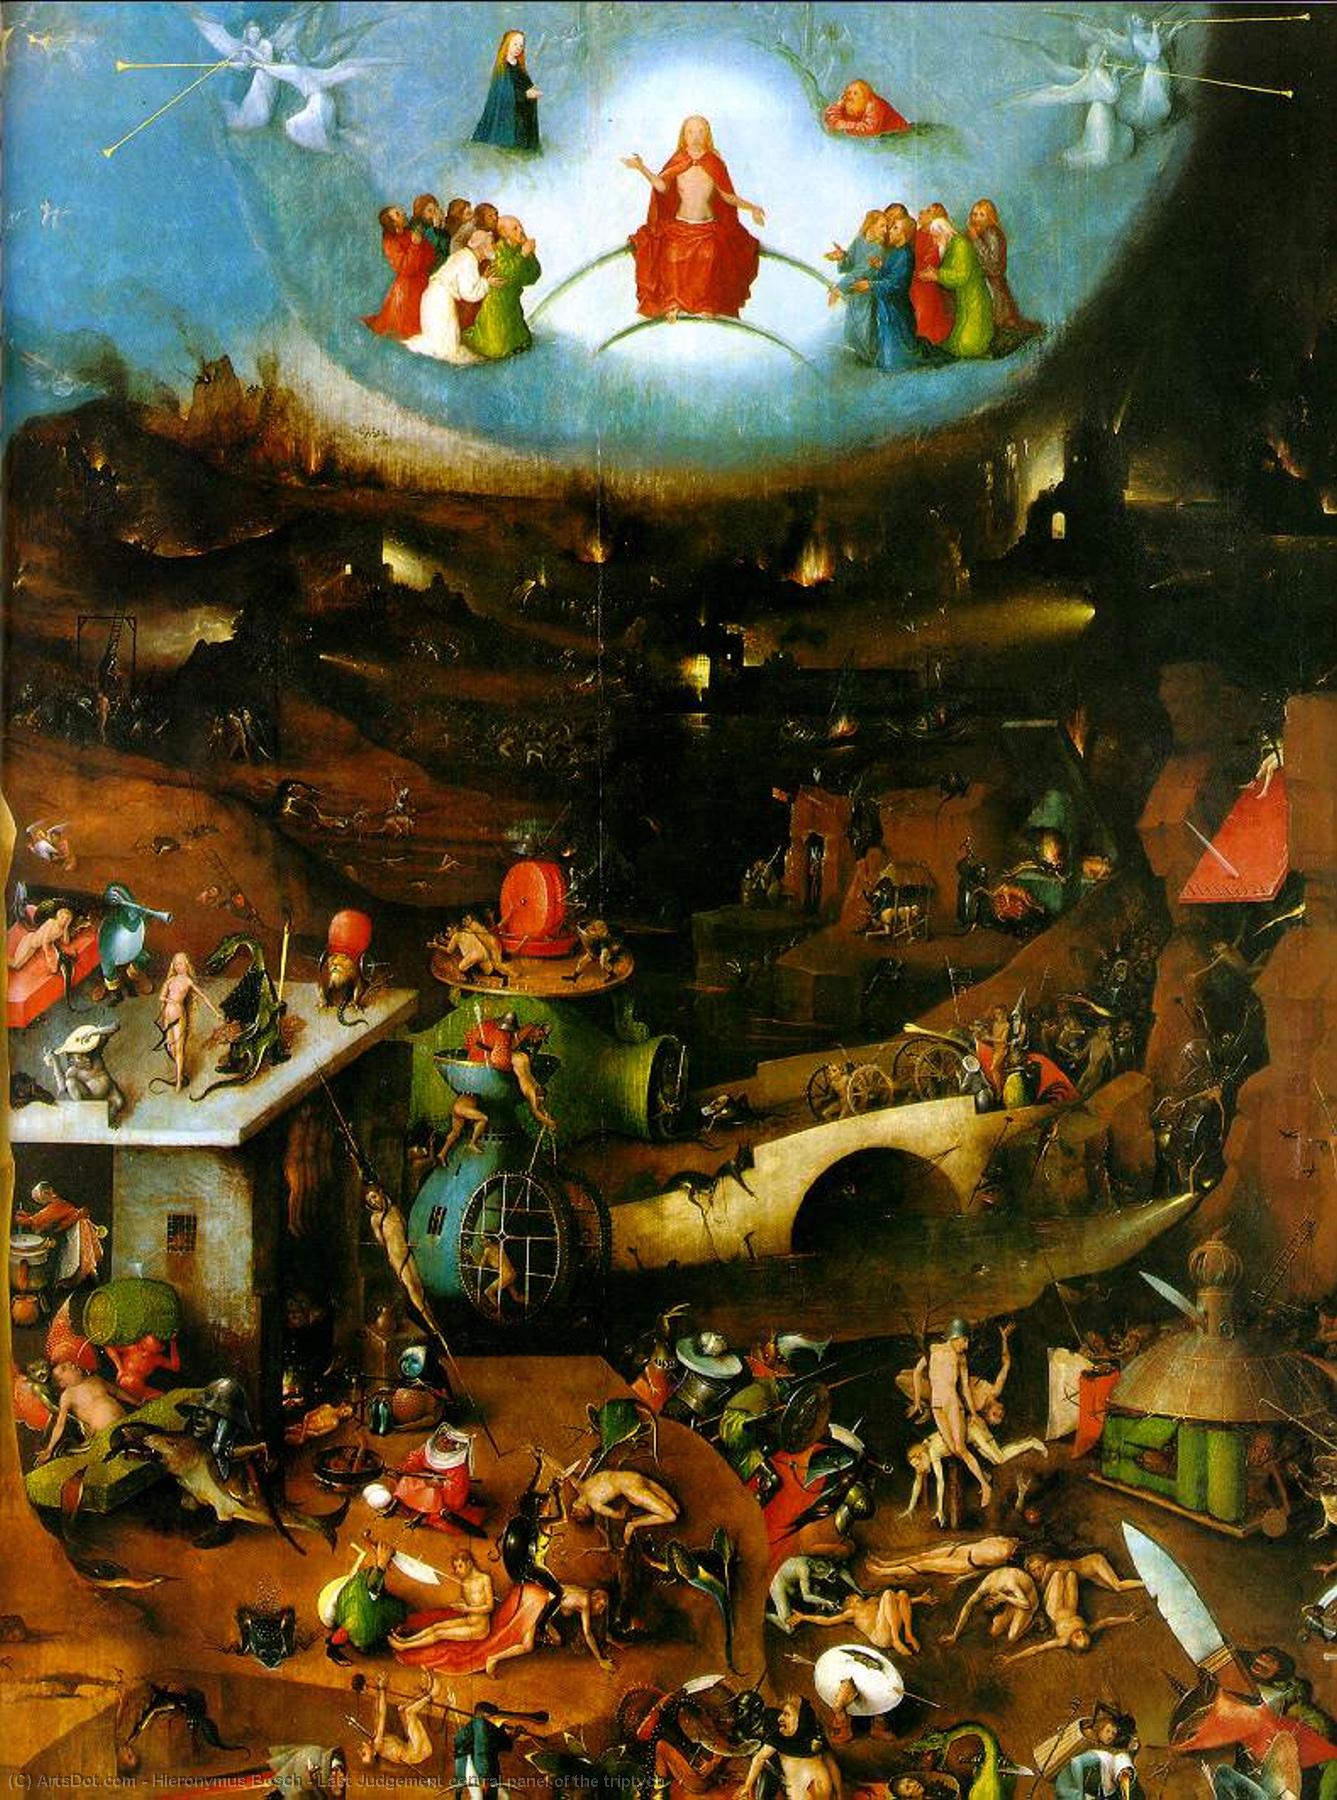 WikiOO.org - Enciclopédia das Belas Artes - Pintura, Arte por Hieronymus Bosch - Last Judgement central panel of the triptych